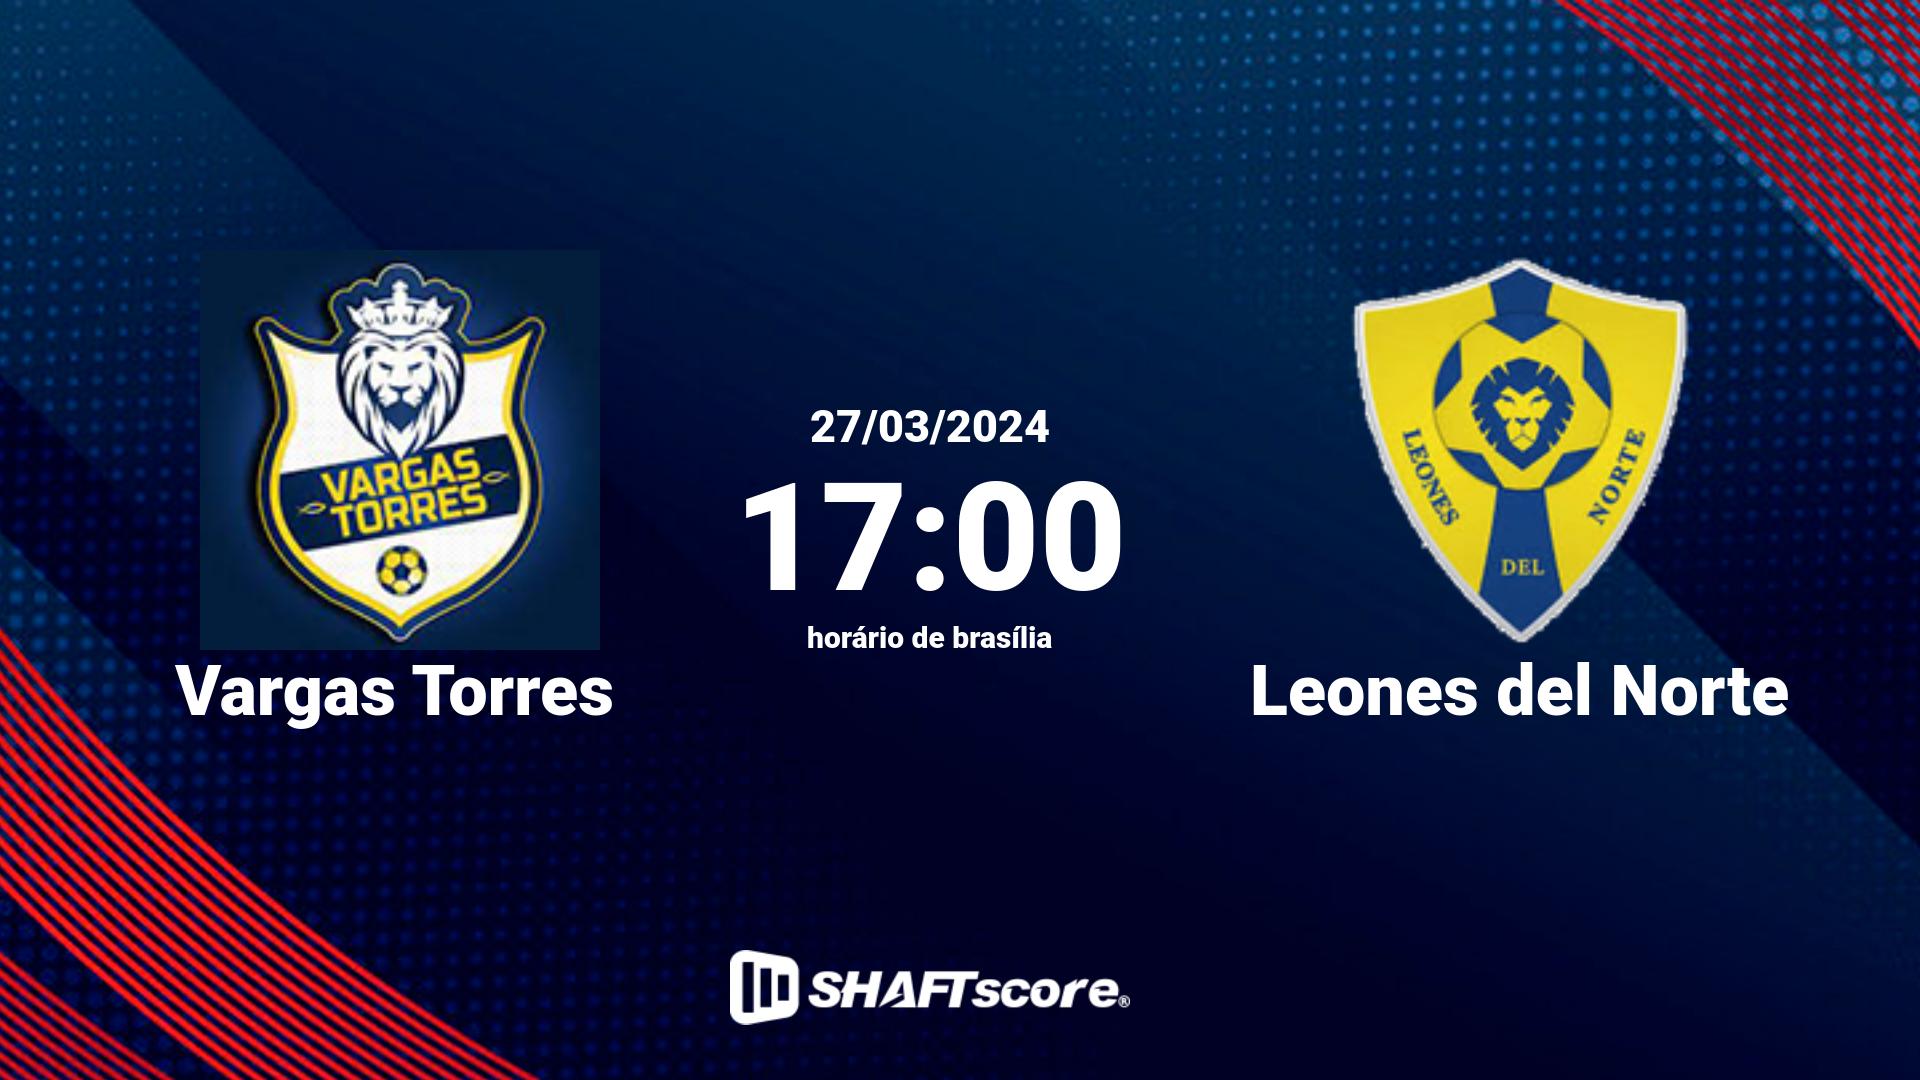 Estatísticas do jogo Vargas Torres vs Leones del Norte 27.03 17:00